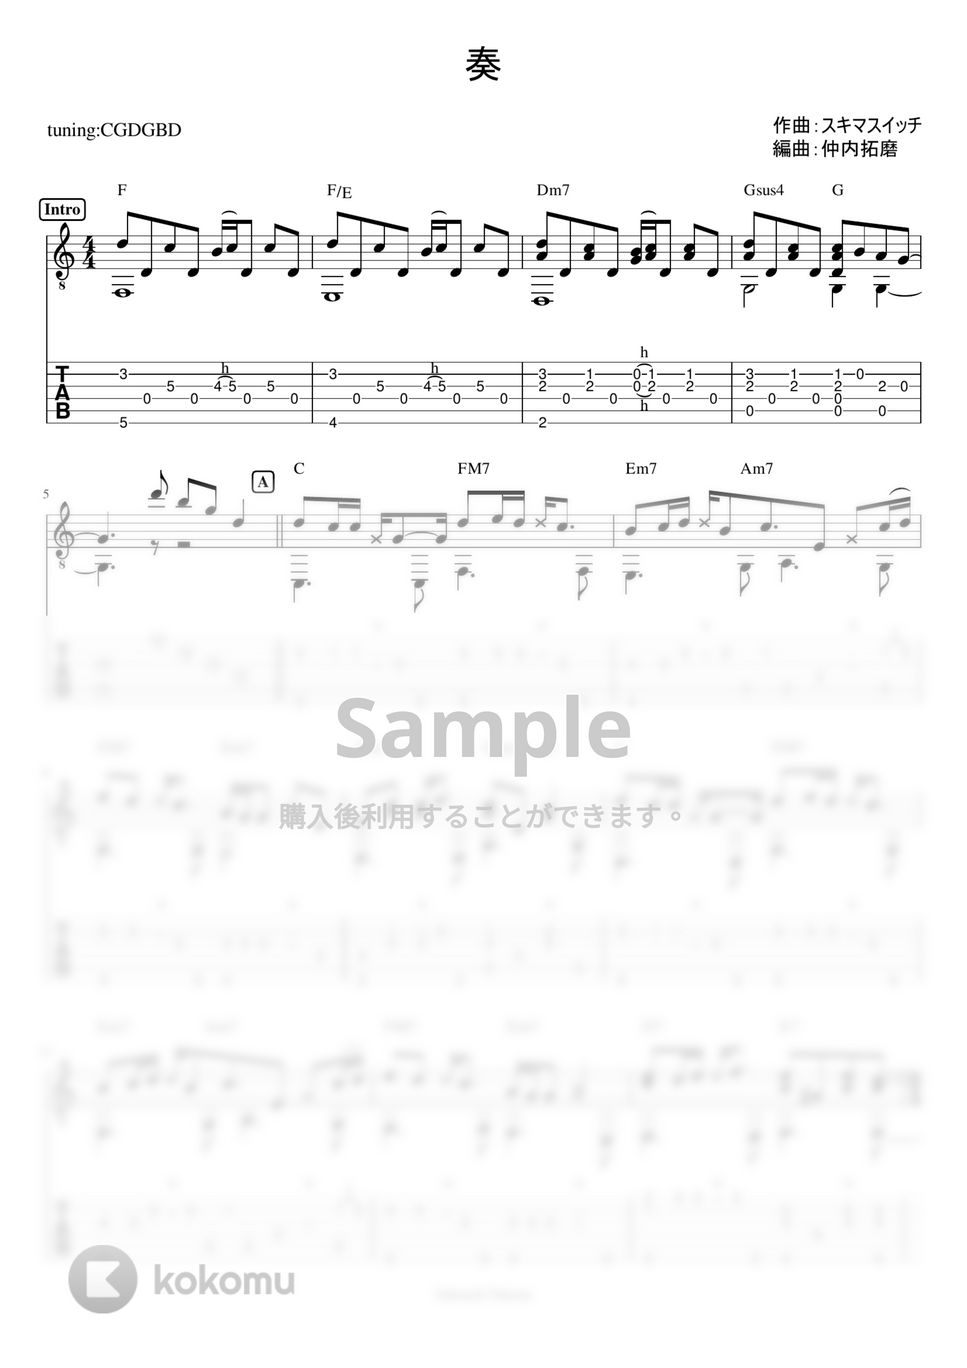 スキマスイッチ - 奏(かなで) (ソロギターTAB譜 解説動画付き) by 仲内拓磨